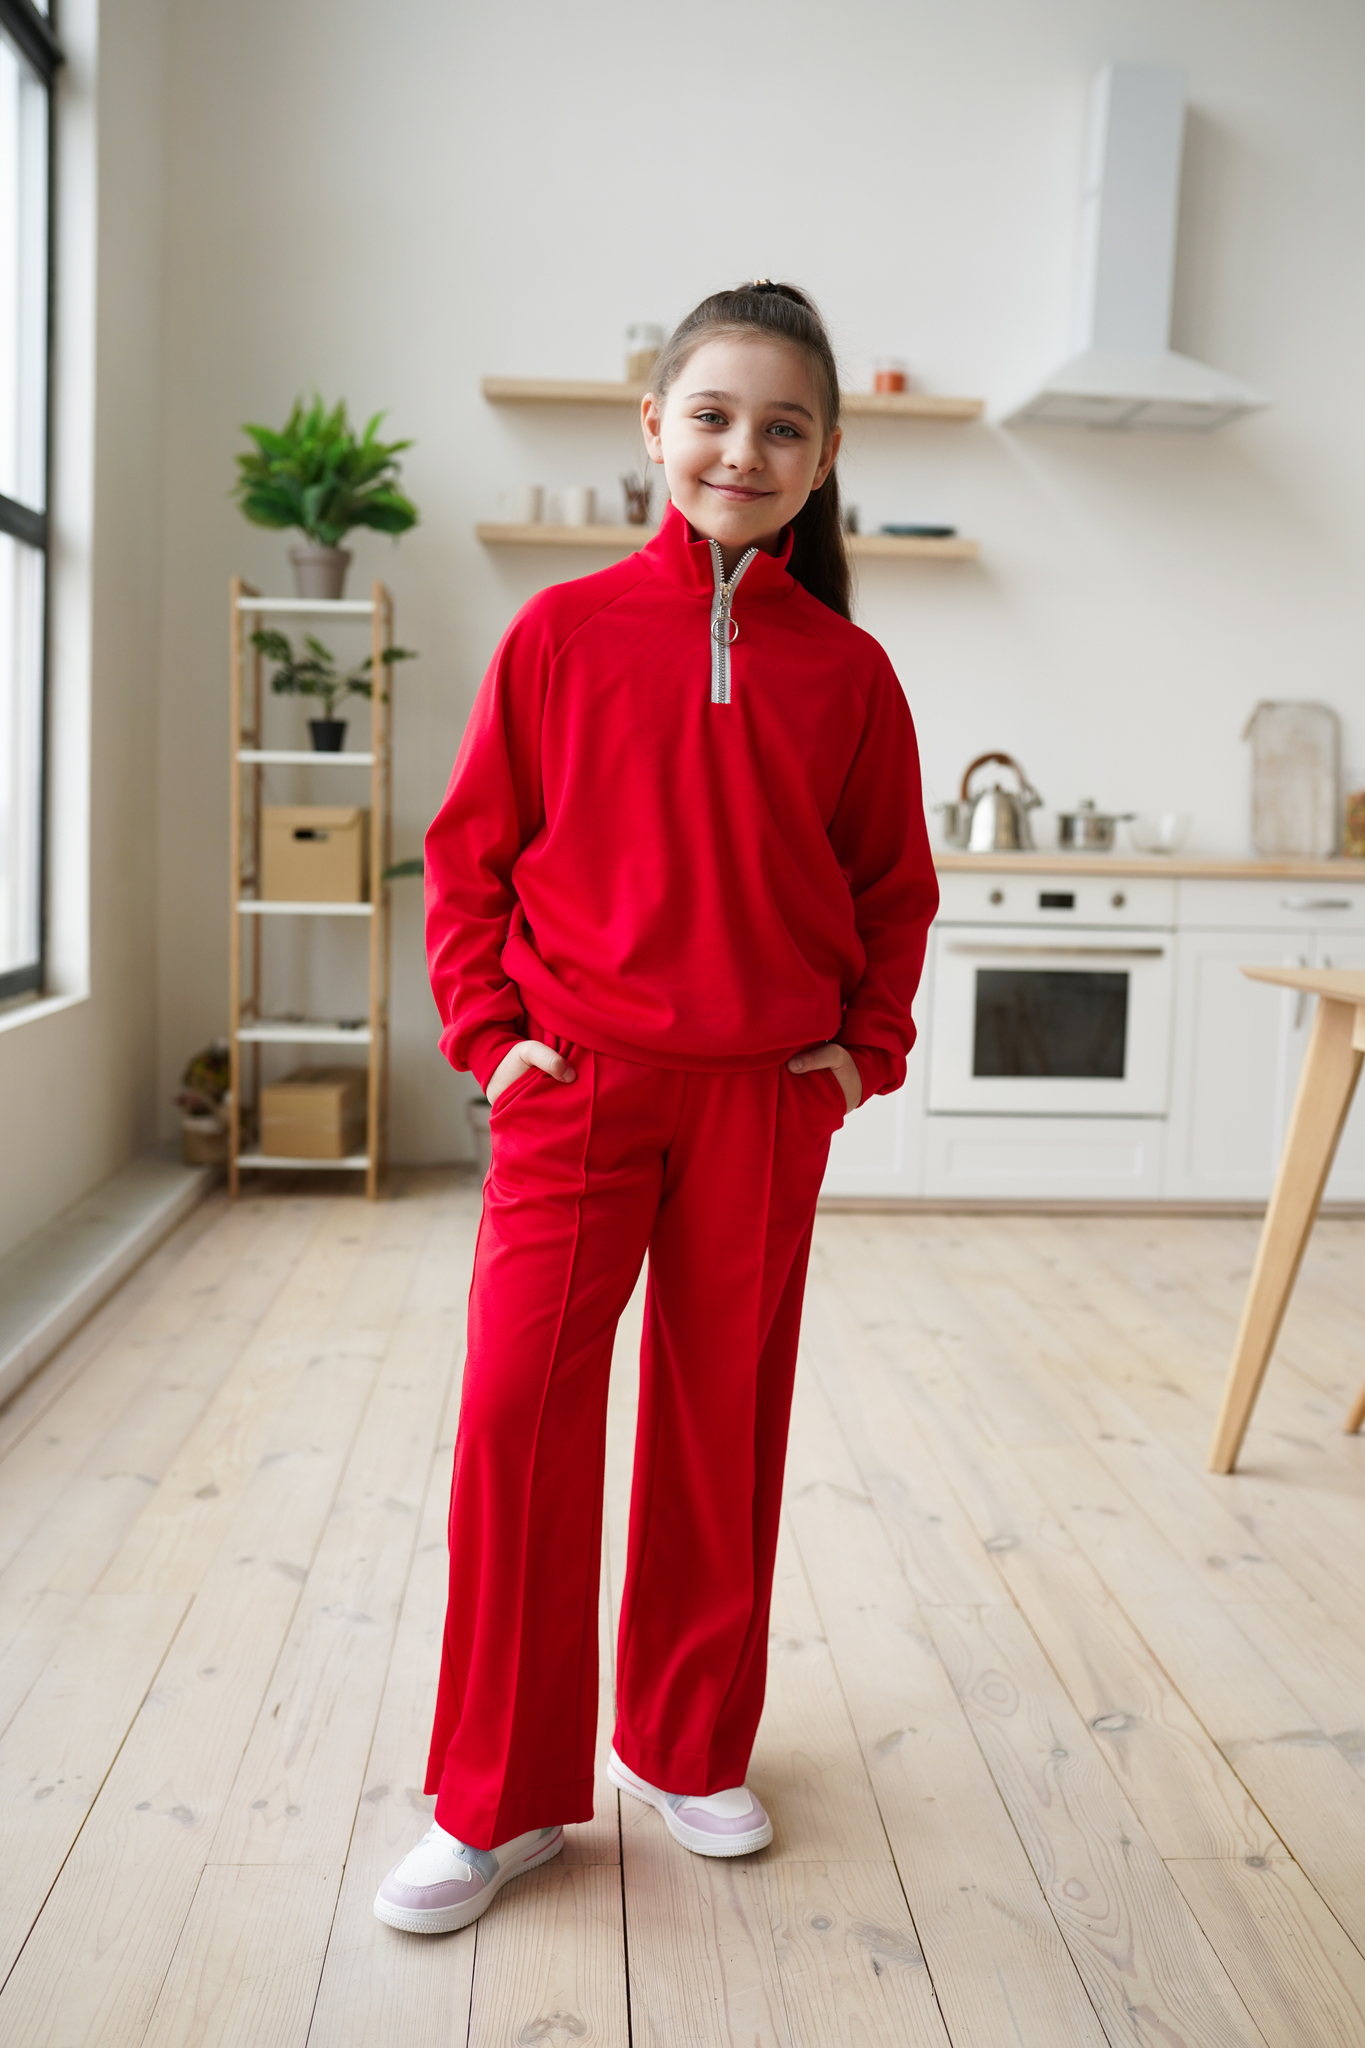 Дитячий, підлітковий костюм з трикотажу червоного кольору для дівчинки.